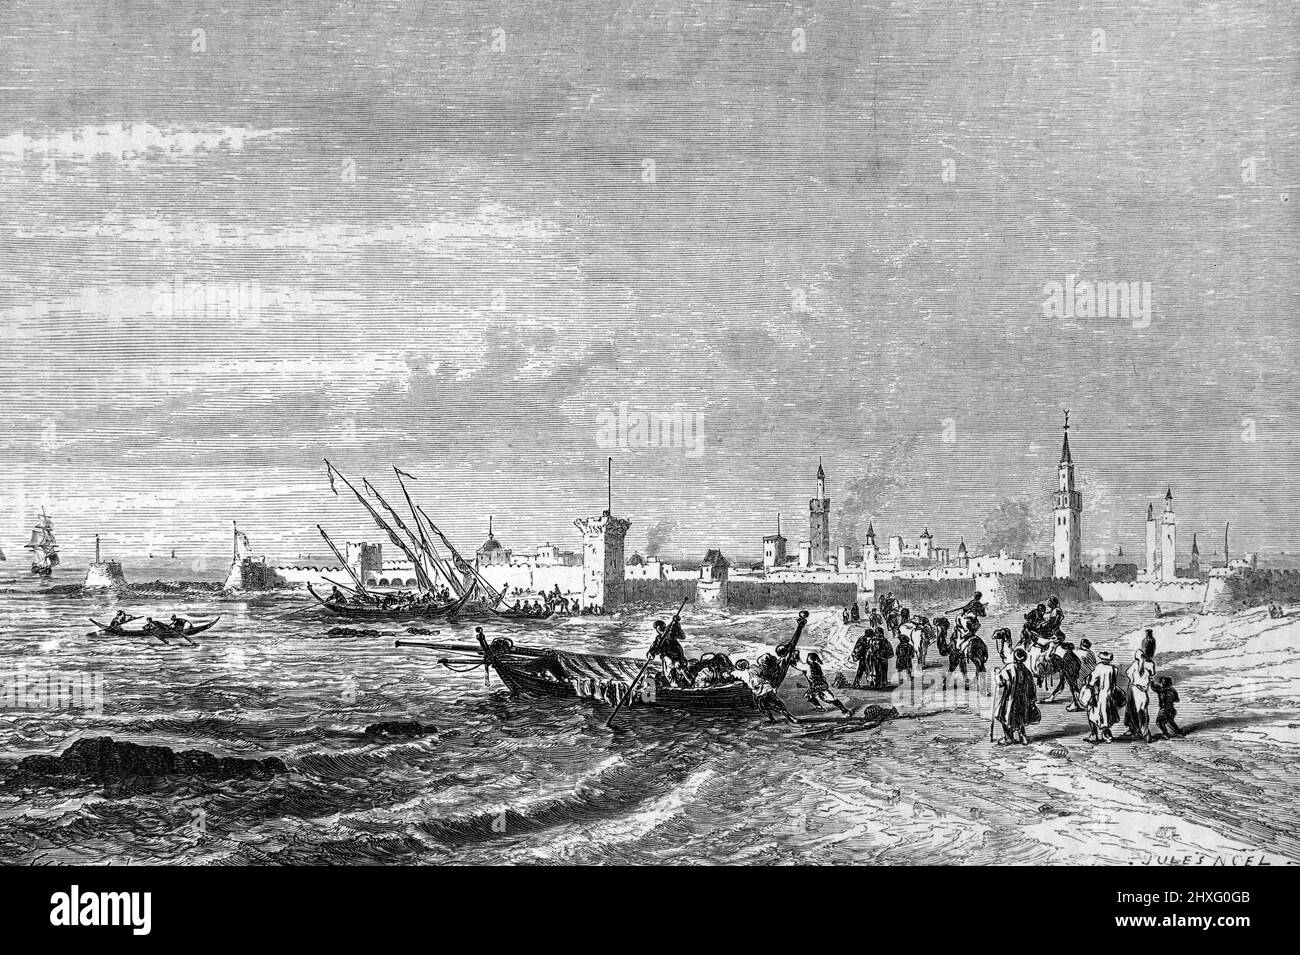 Vue sur la ville fortifiée, la côte et la plage d'Essaouira Maroc. Illustration ancienne ou gravure 1860. Banque D'Images